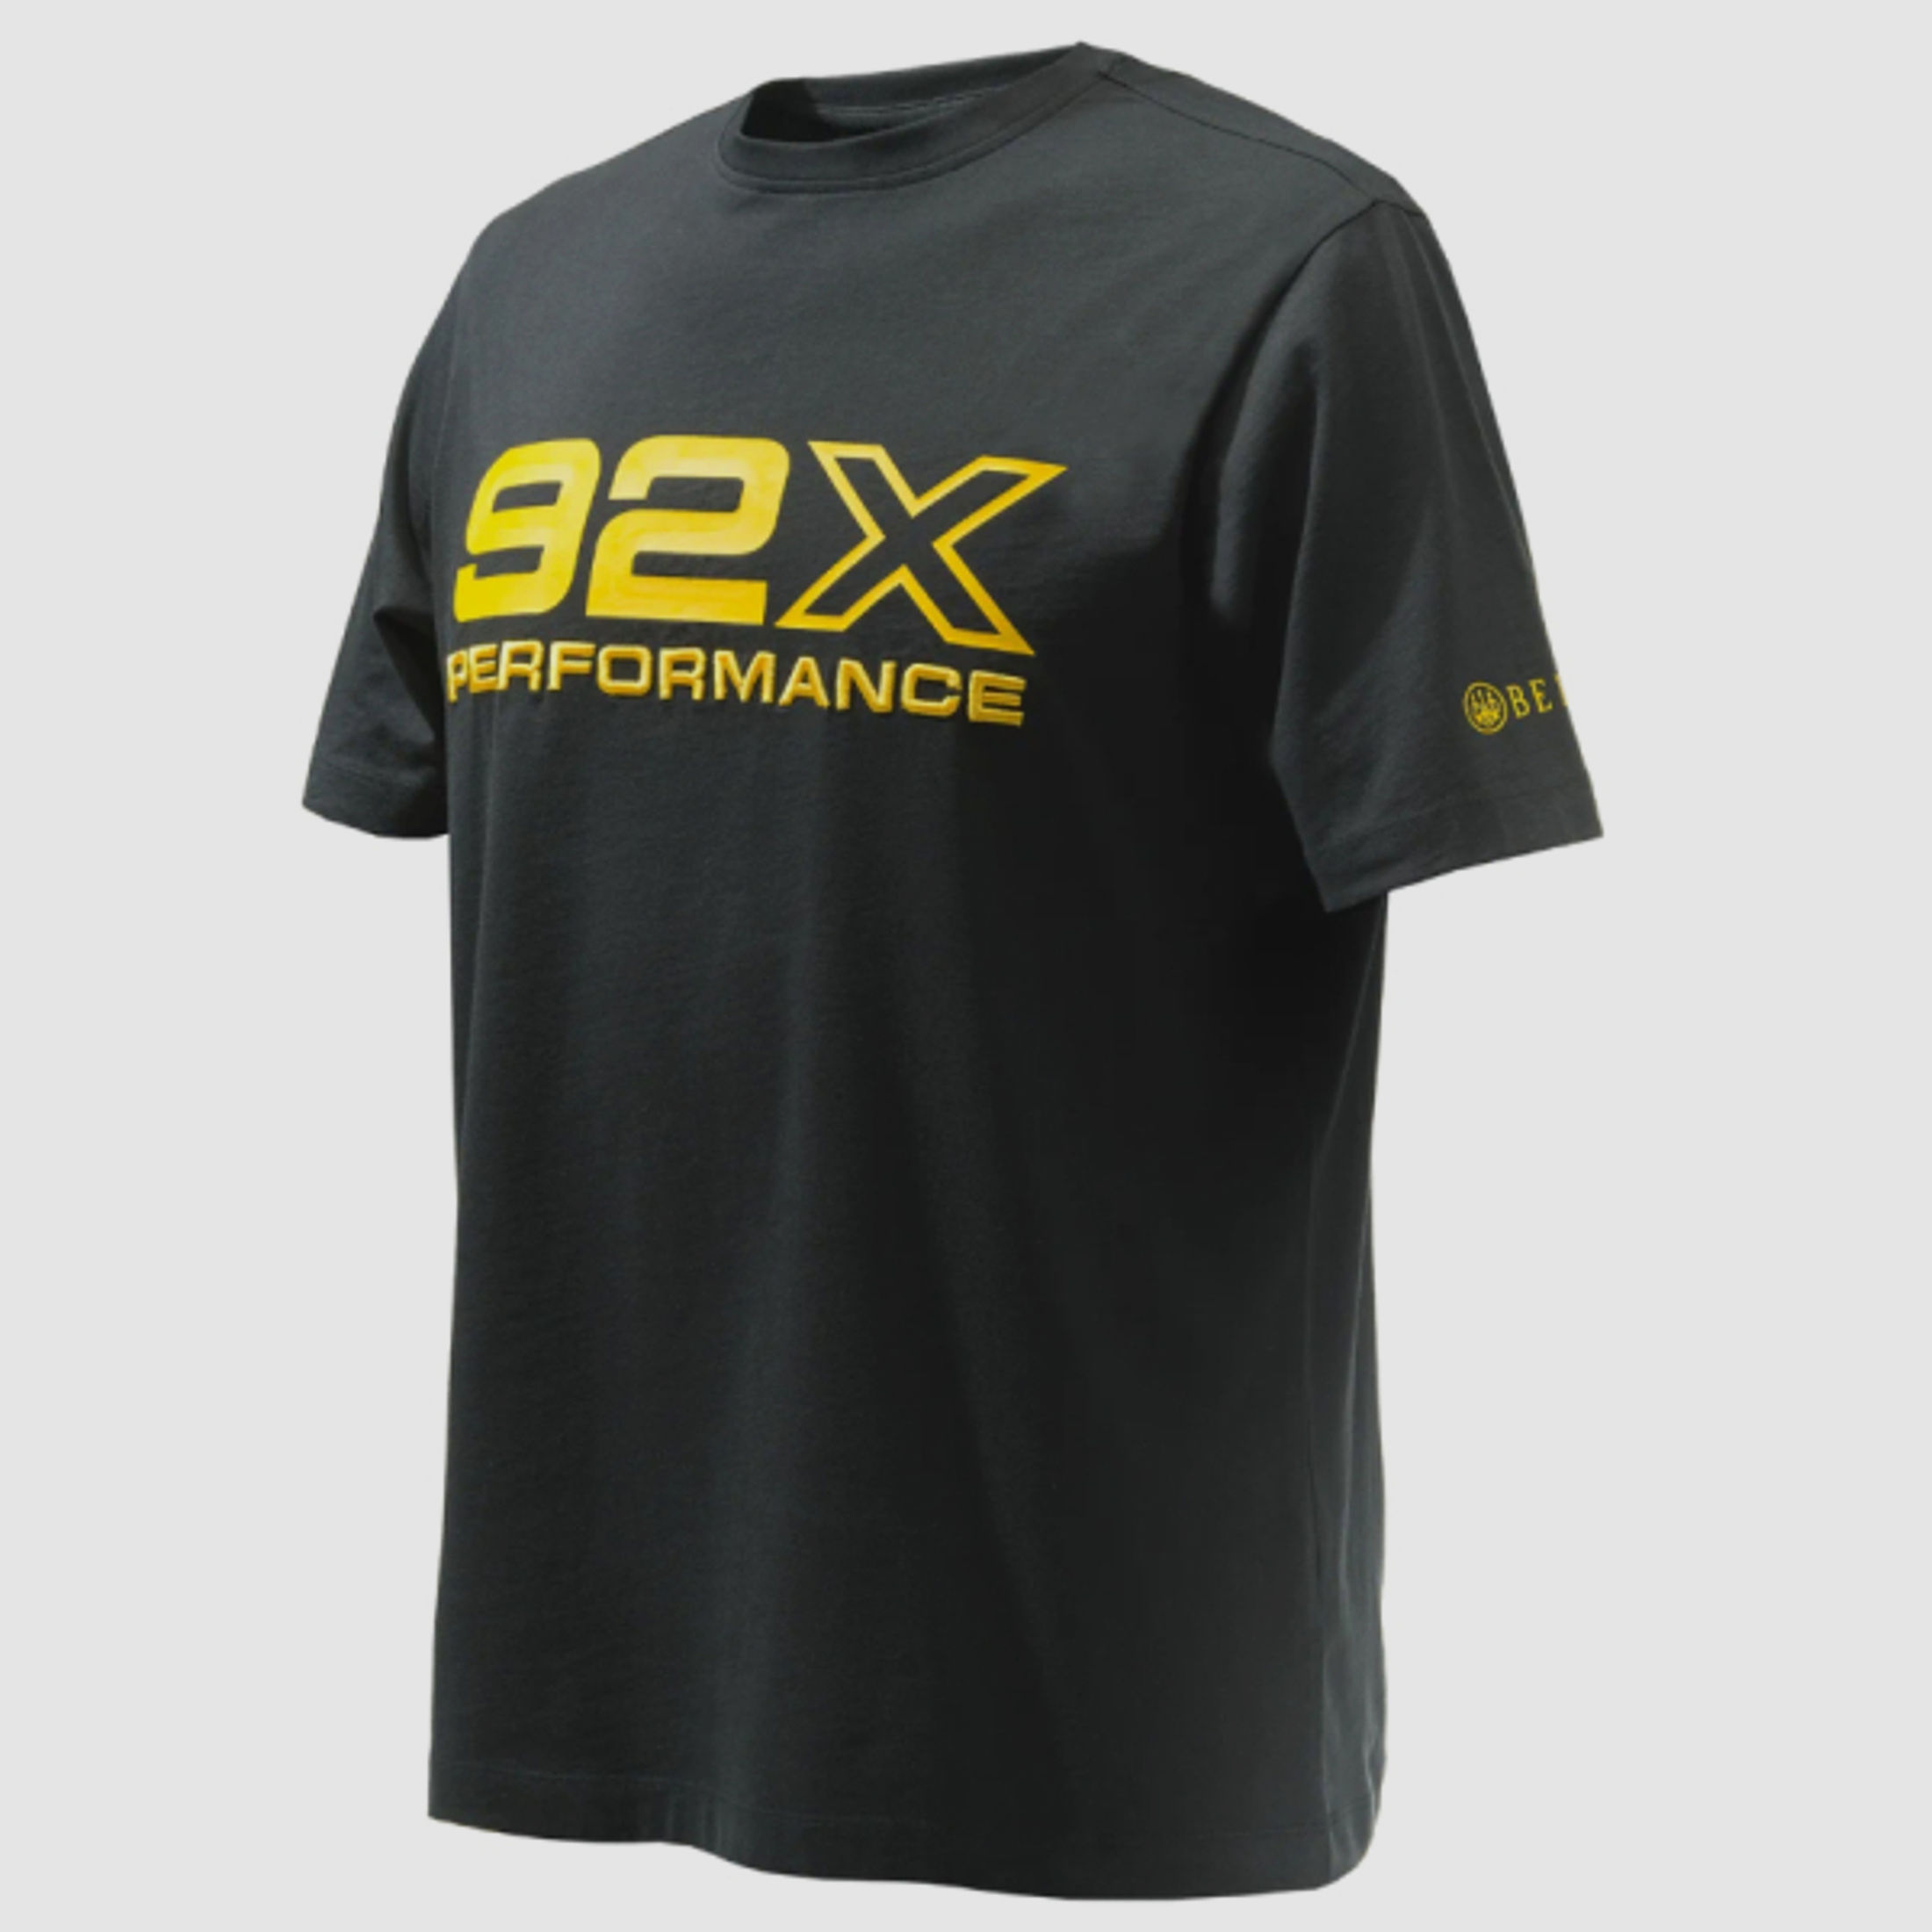 -60% BERETTA T-Shirt 92X PERFORMCE 100% Baumwolle Rundhals Schwarz | Gelbe 92X Grafik IPSC Größe: XL